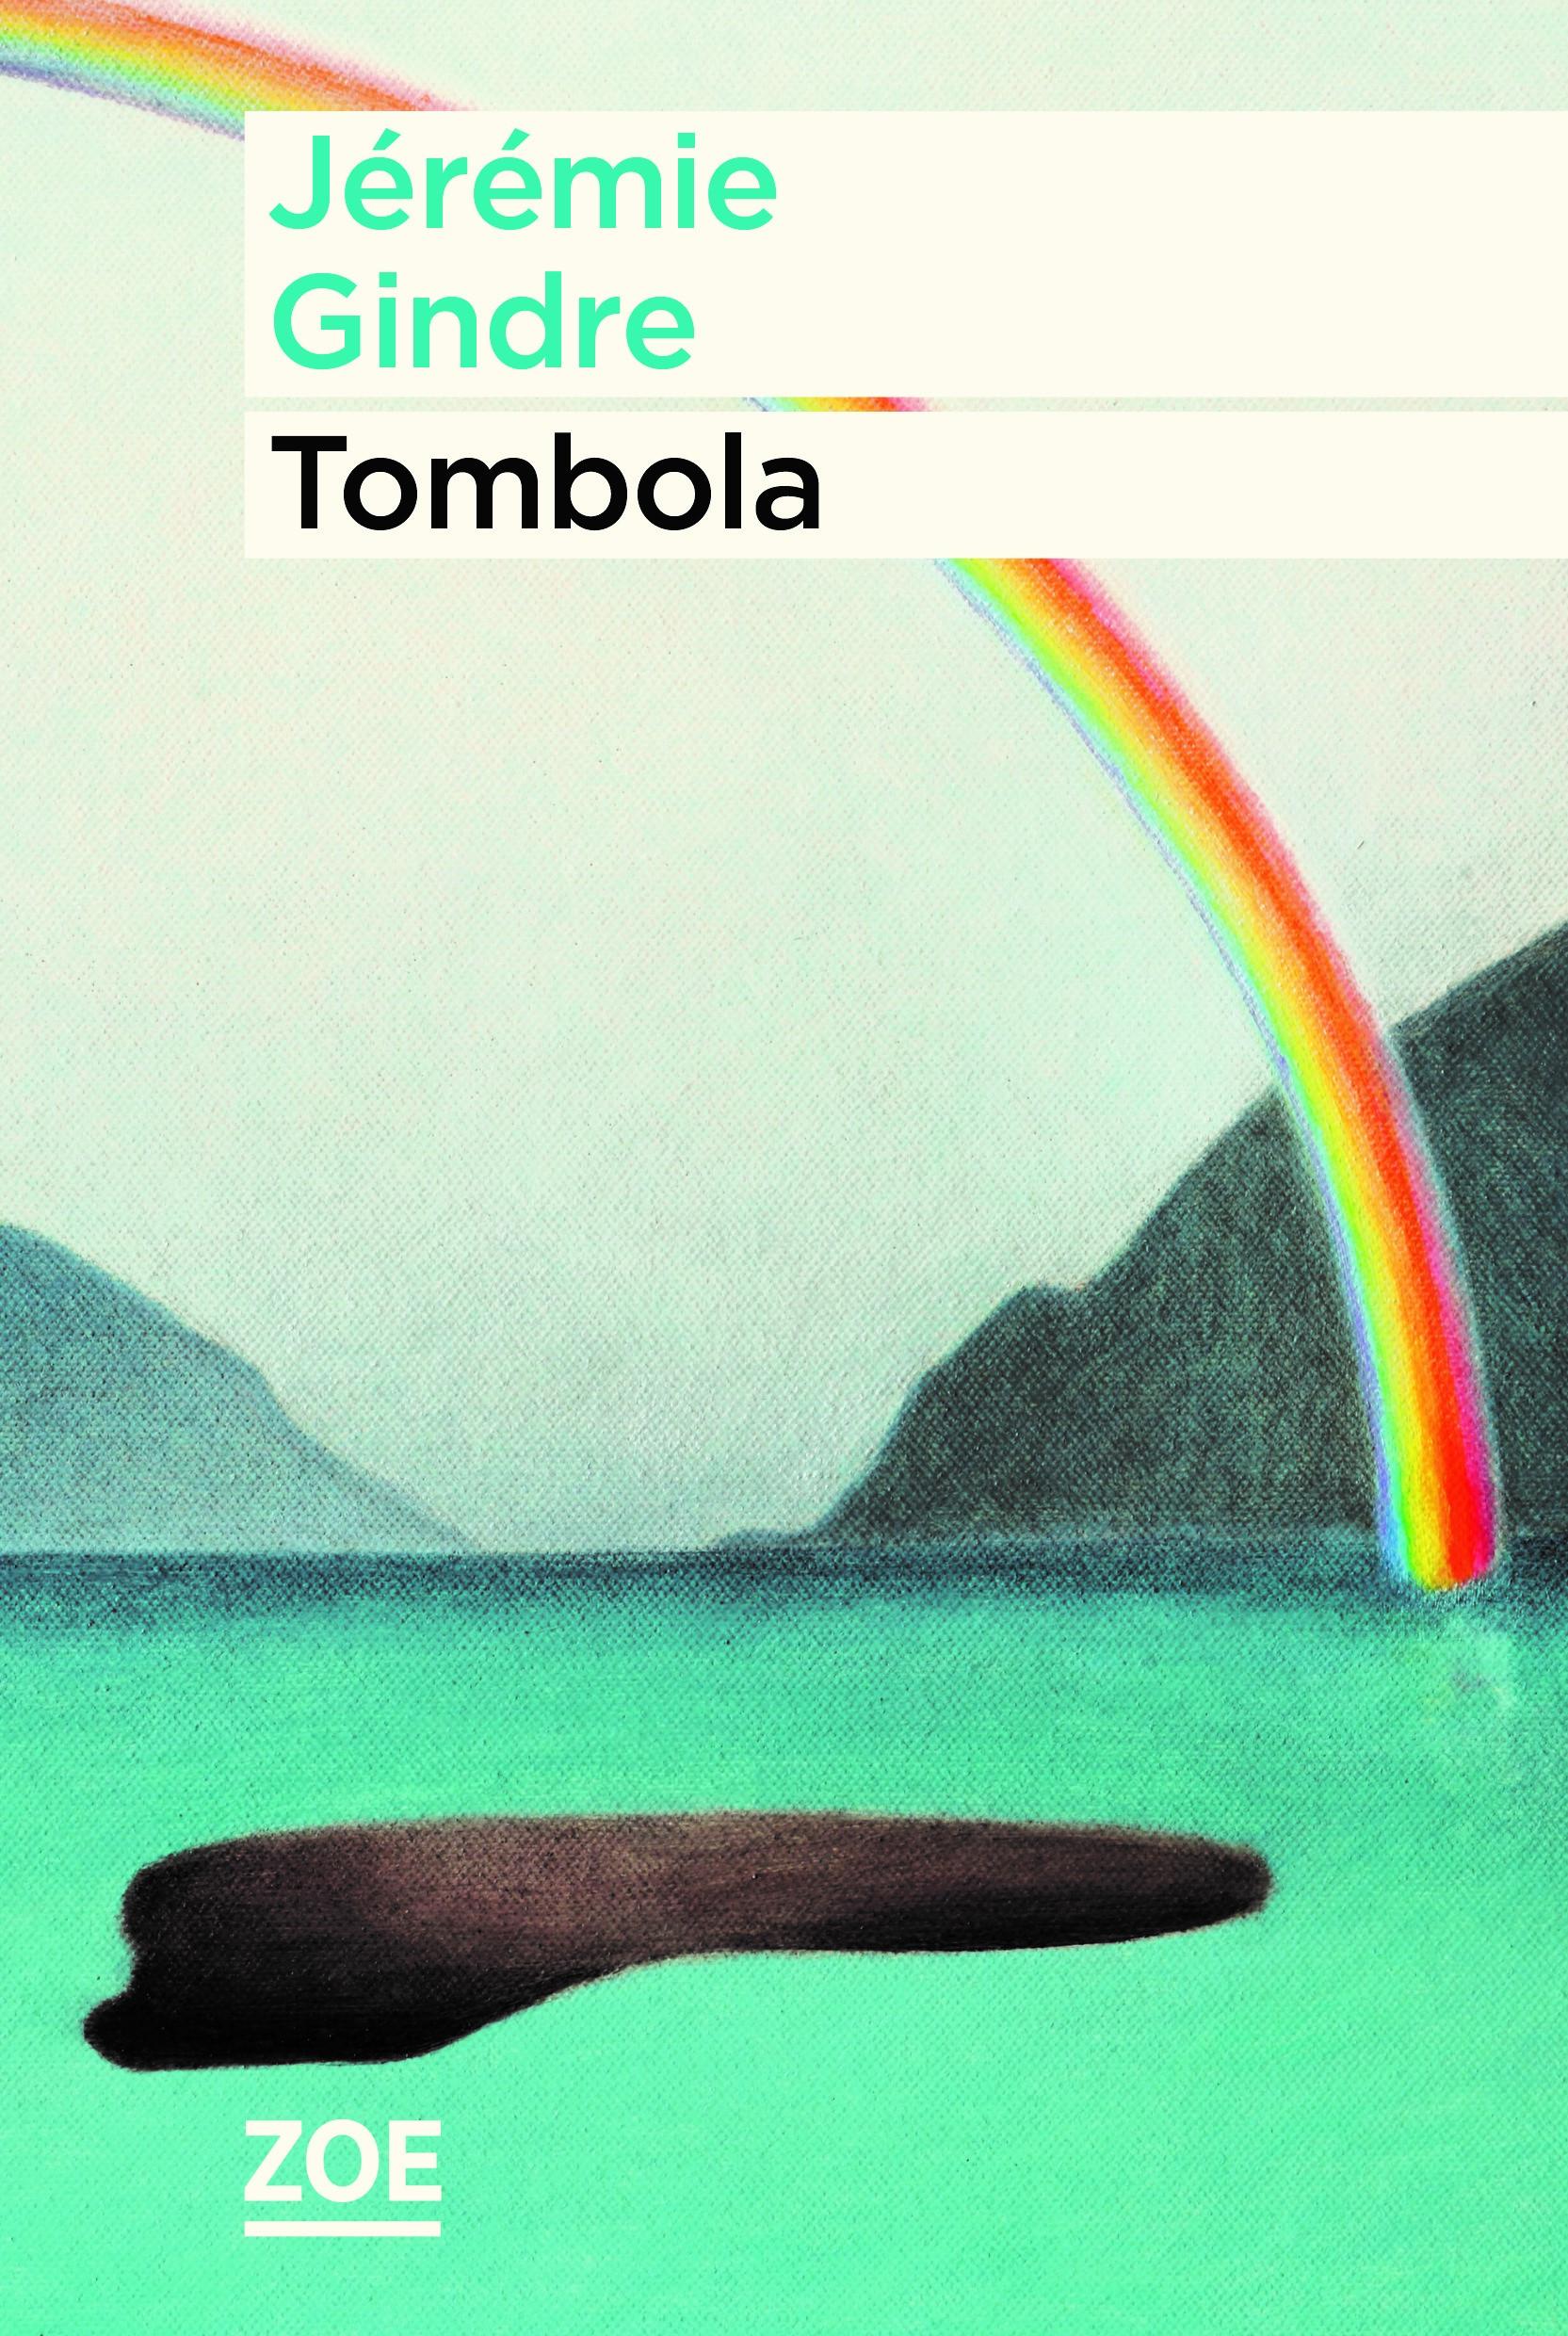 La couverture du livre de Jérémie Gindre, "Tombola". [Editions Zoe]